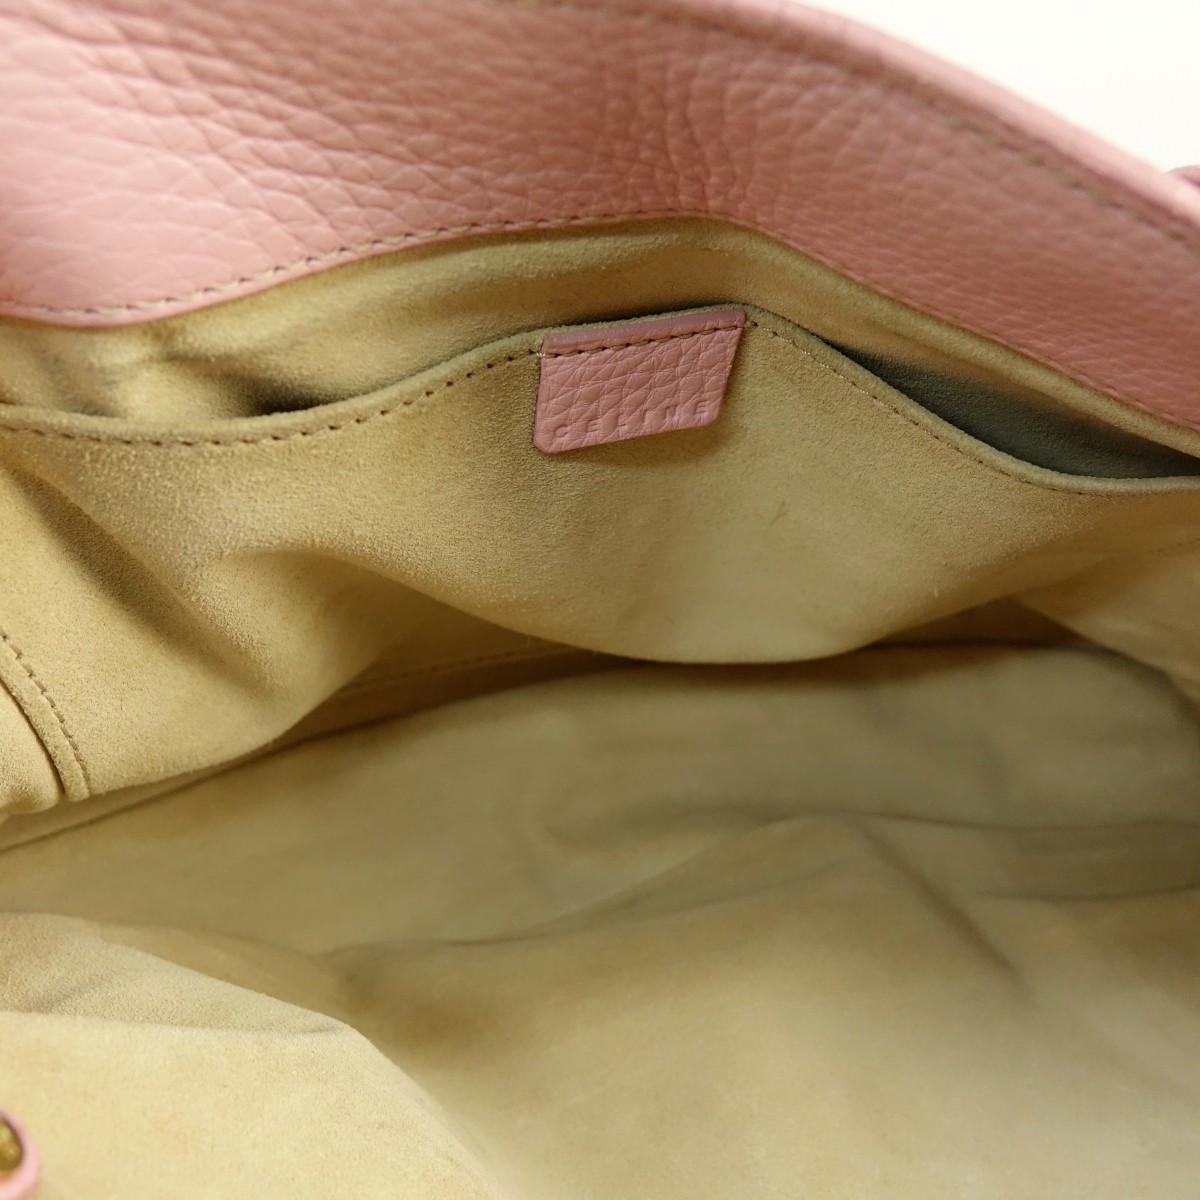 Celine Pink Leather Boogie Bag